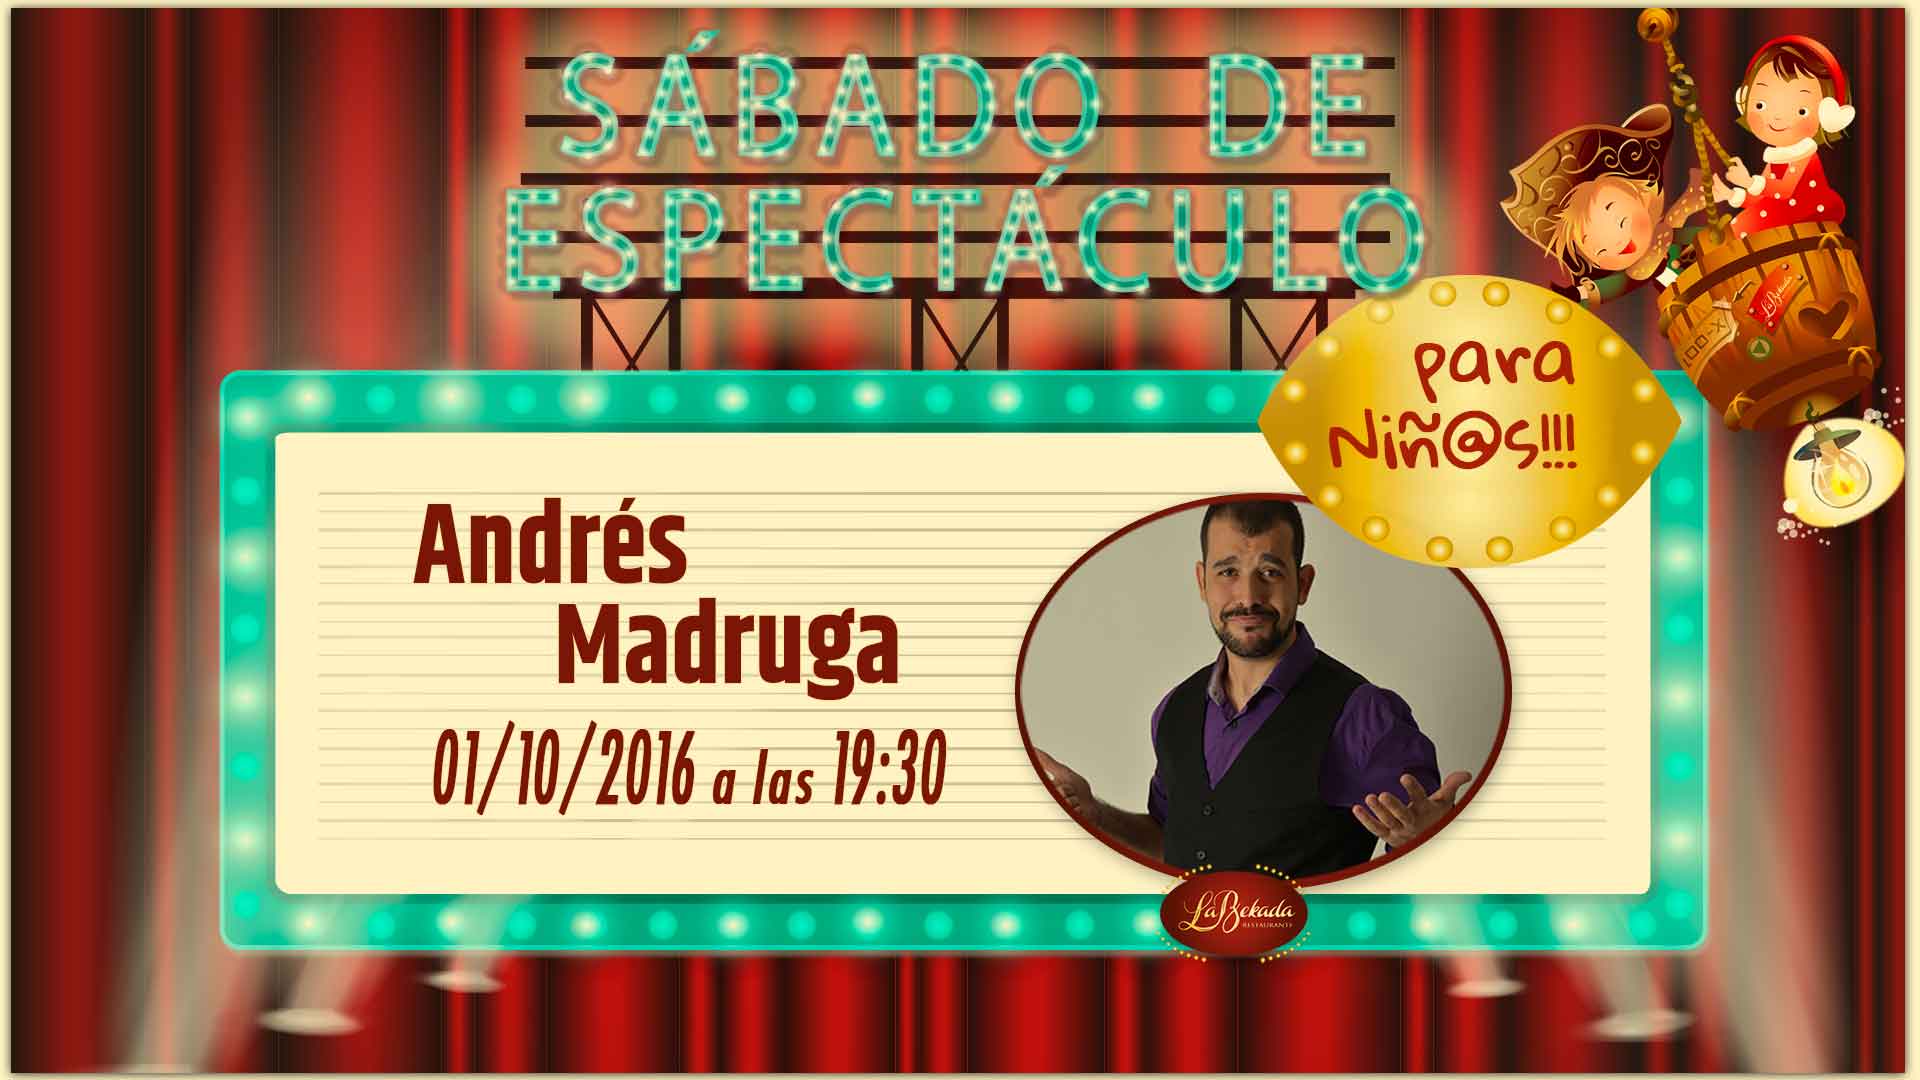 Ven al Sábado de Espectáculo a disfrutar de Andrés Madruga la tarde del 1 de octubre a partir de las 19:30